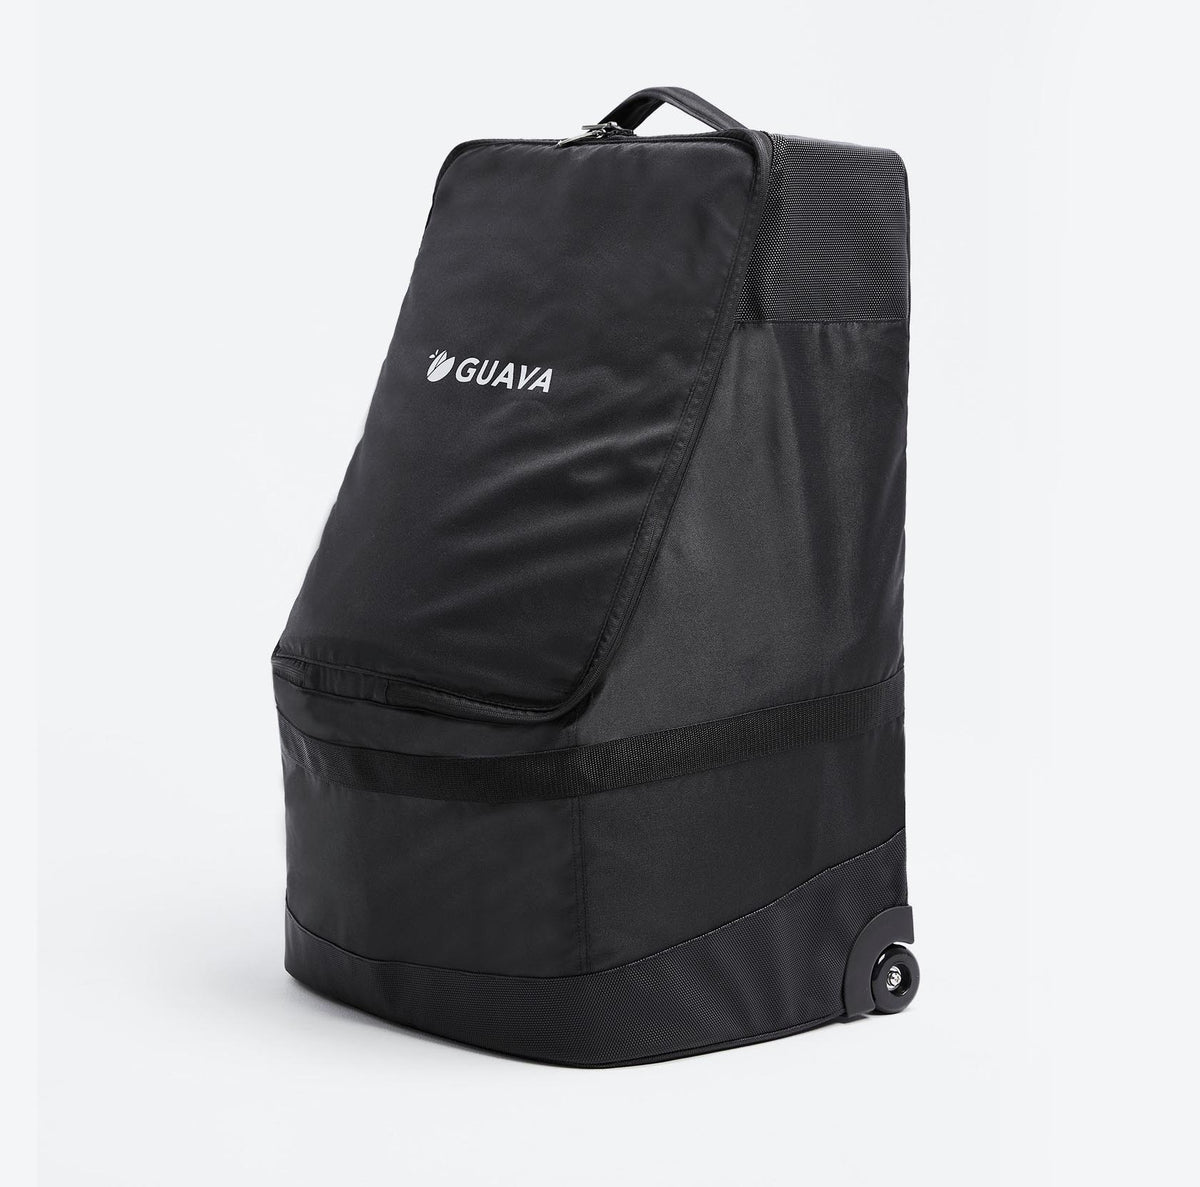 Roam Padded Roller Backpack